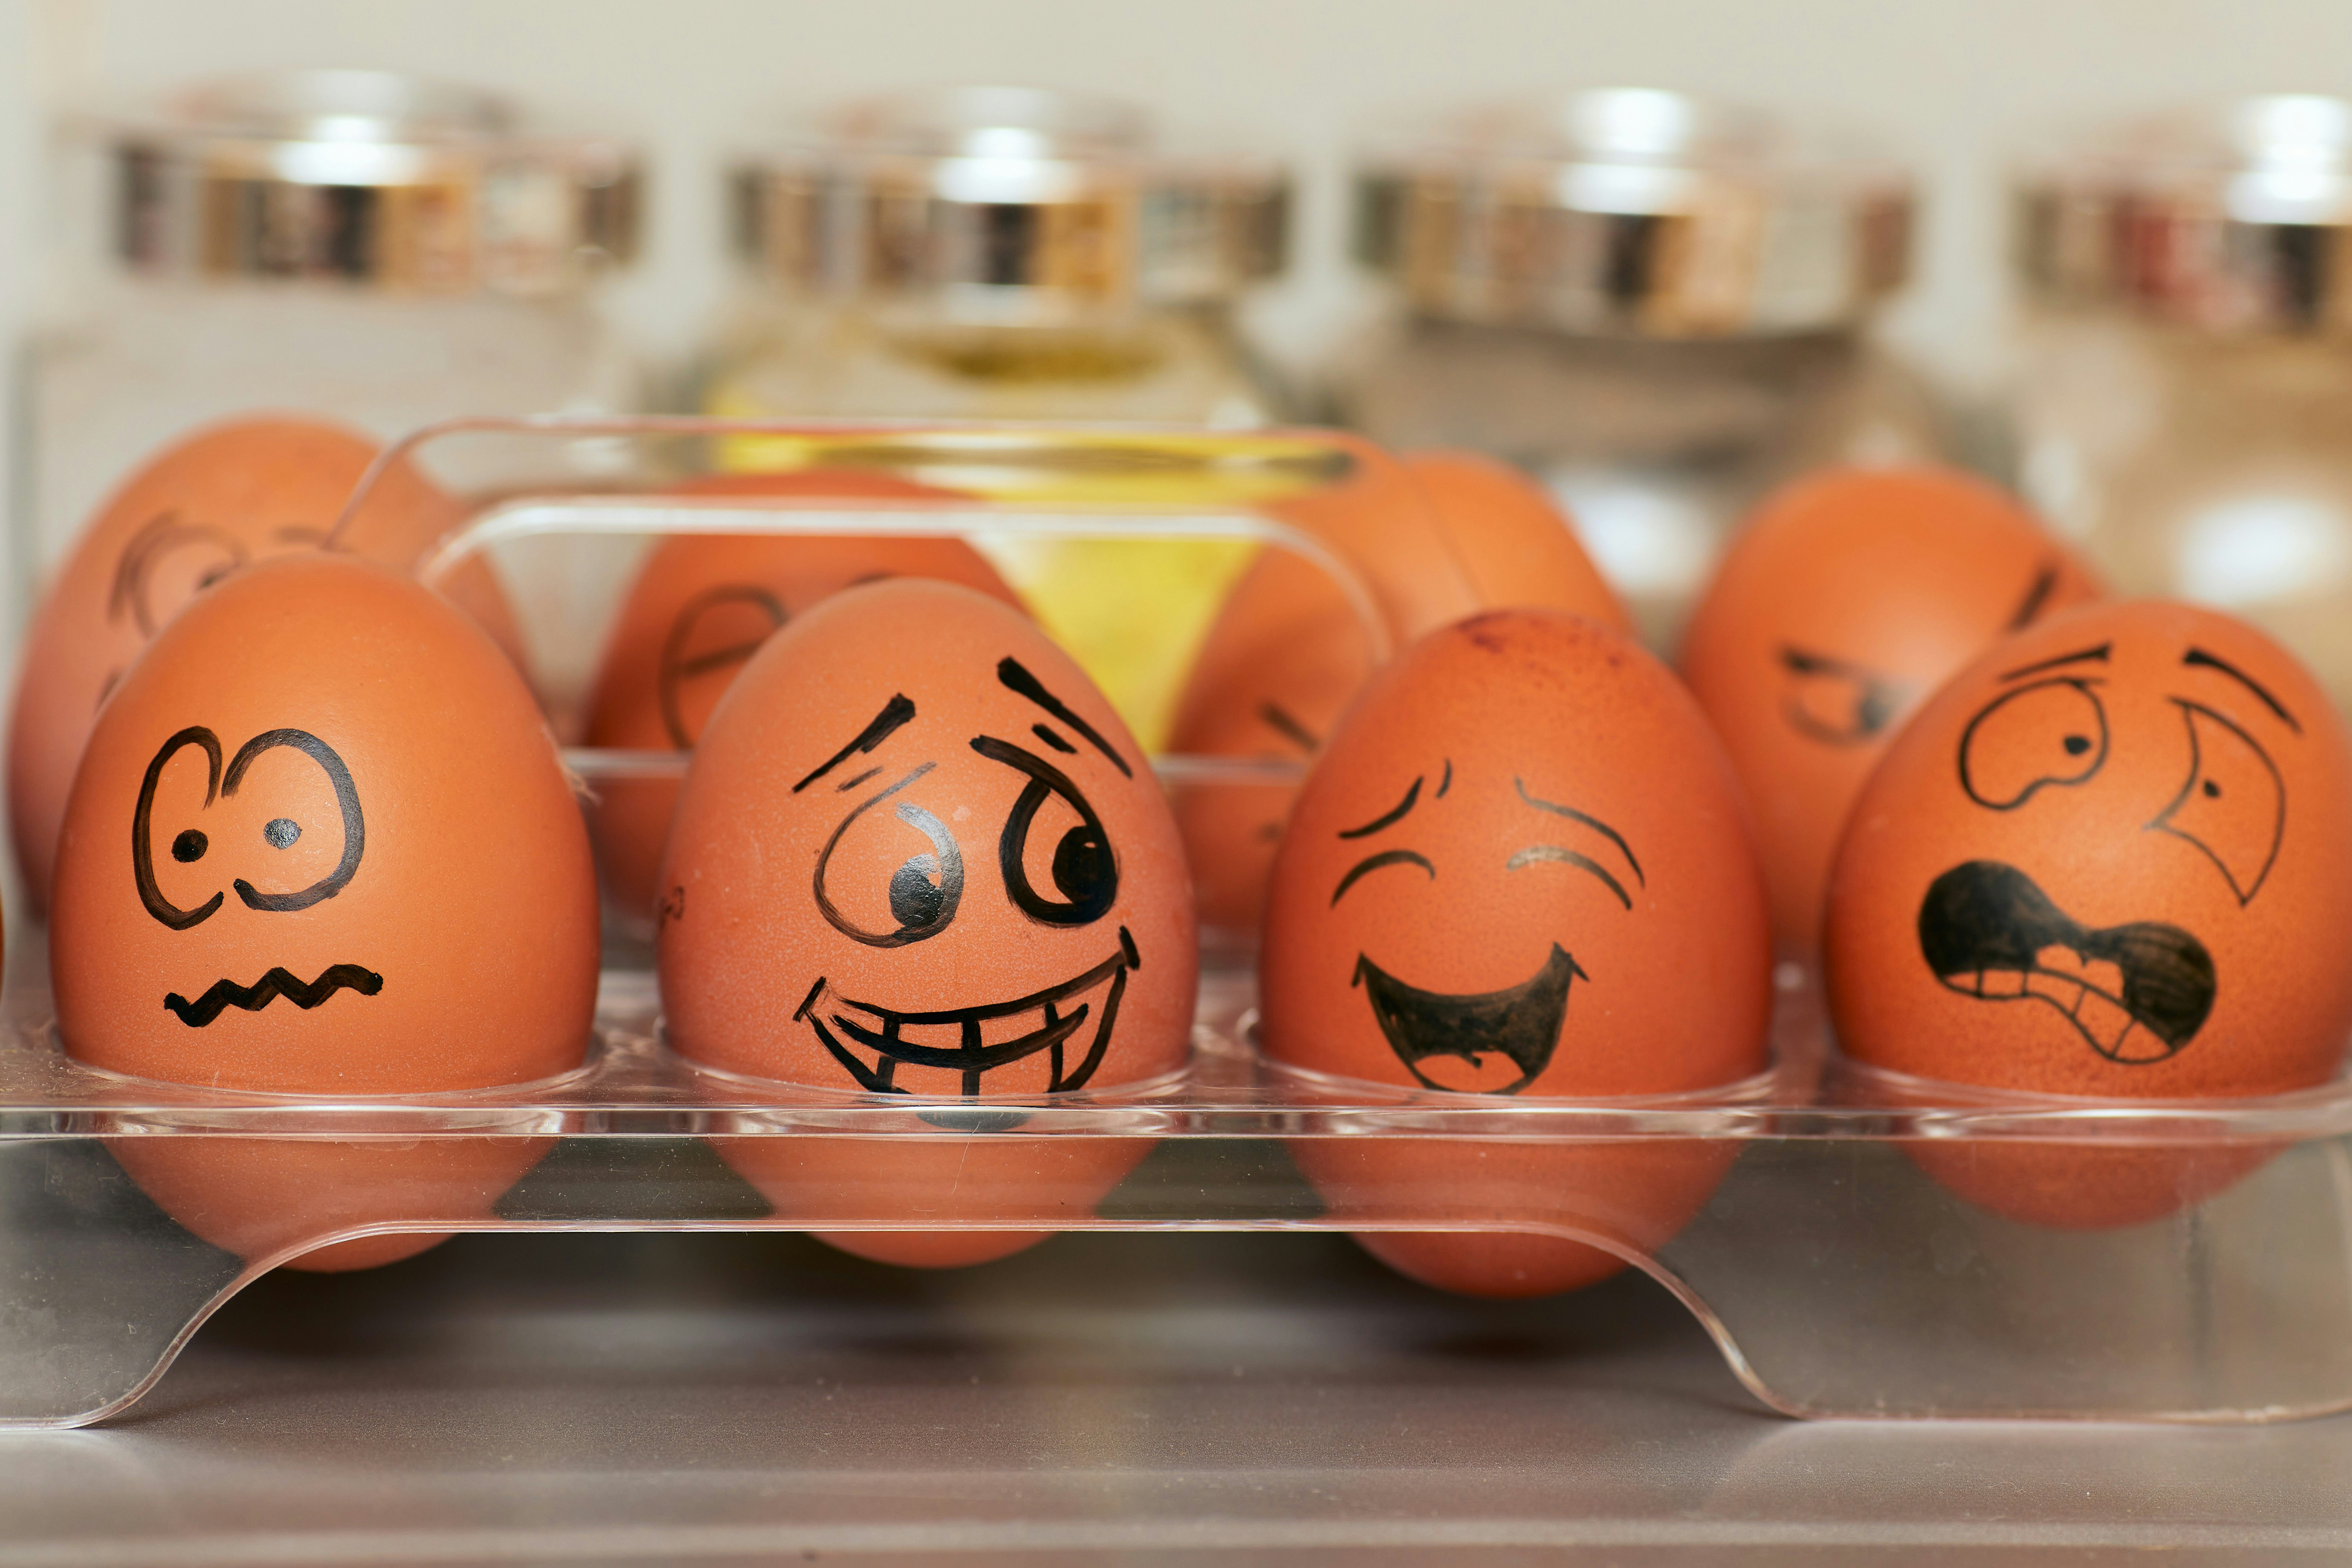 圖示：畫上各種表情的雞蛋。圖片來源為網路